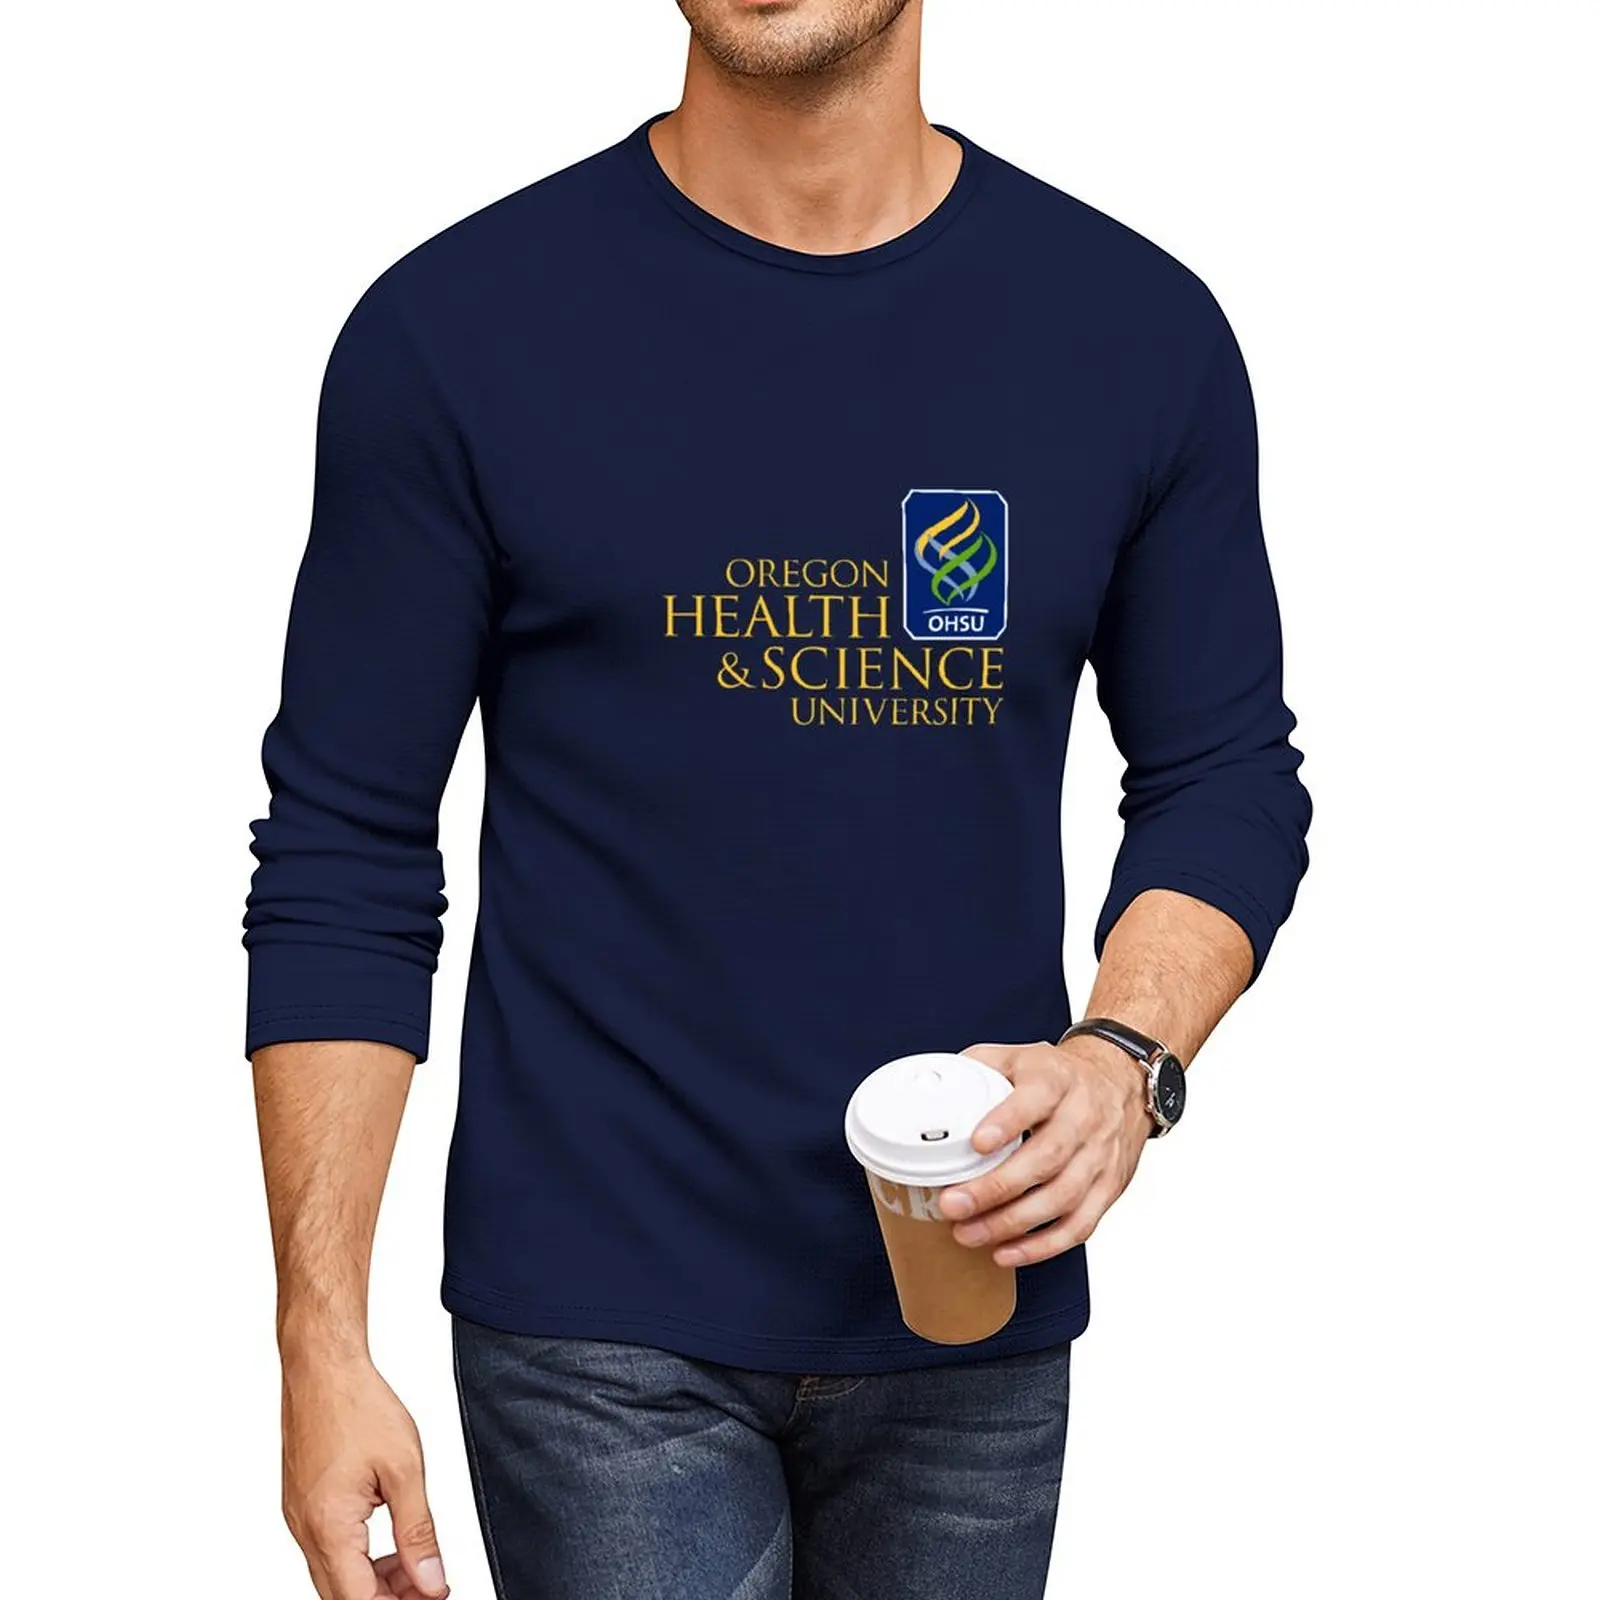 Новая длинная футболка Университета здравоохранения и науки штата Орегон (OHSU), футболки для любителей спорта, футболка нового выпуска, мужская футболка оверсайз